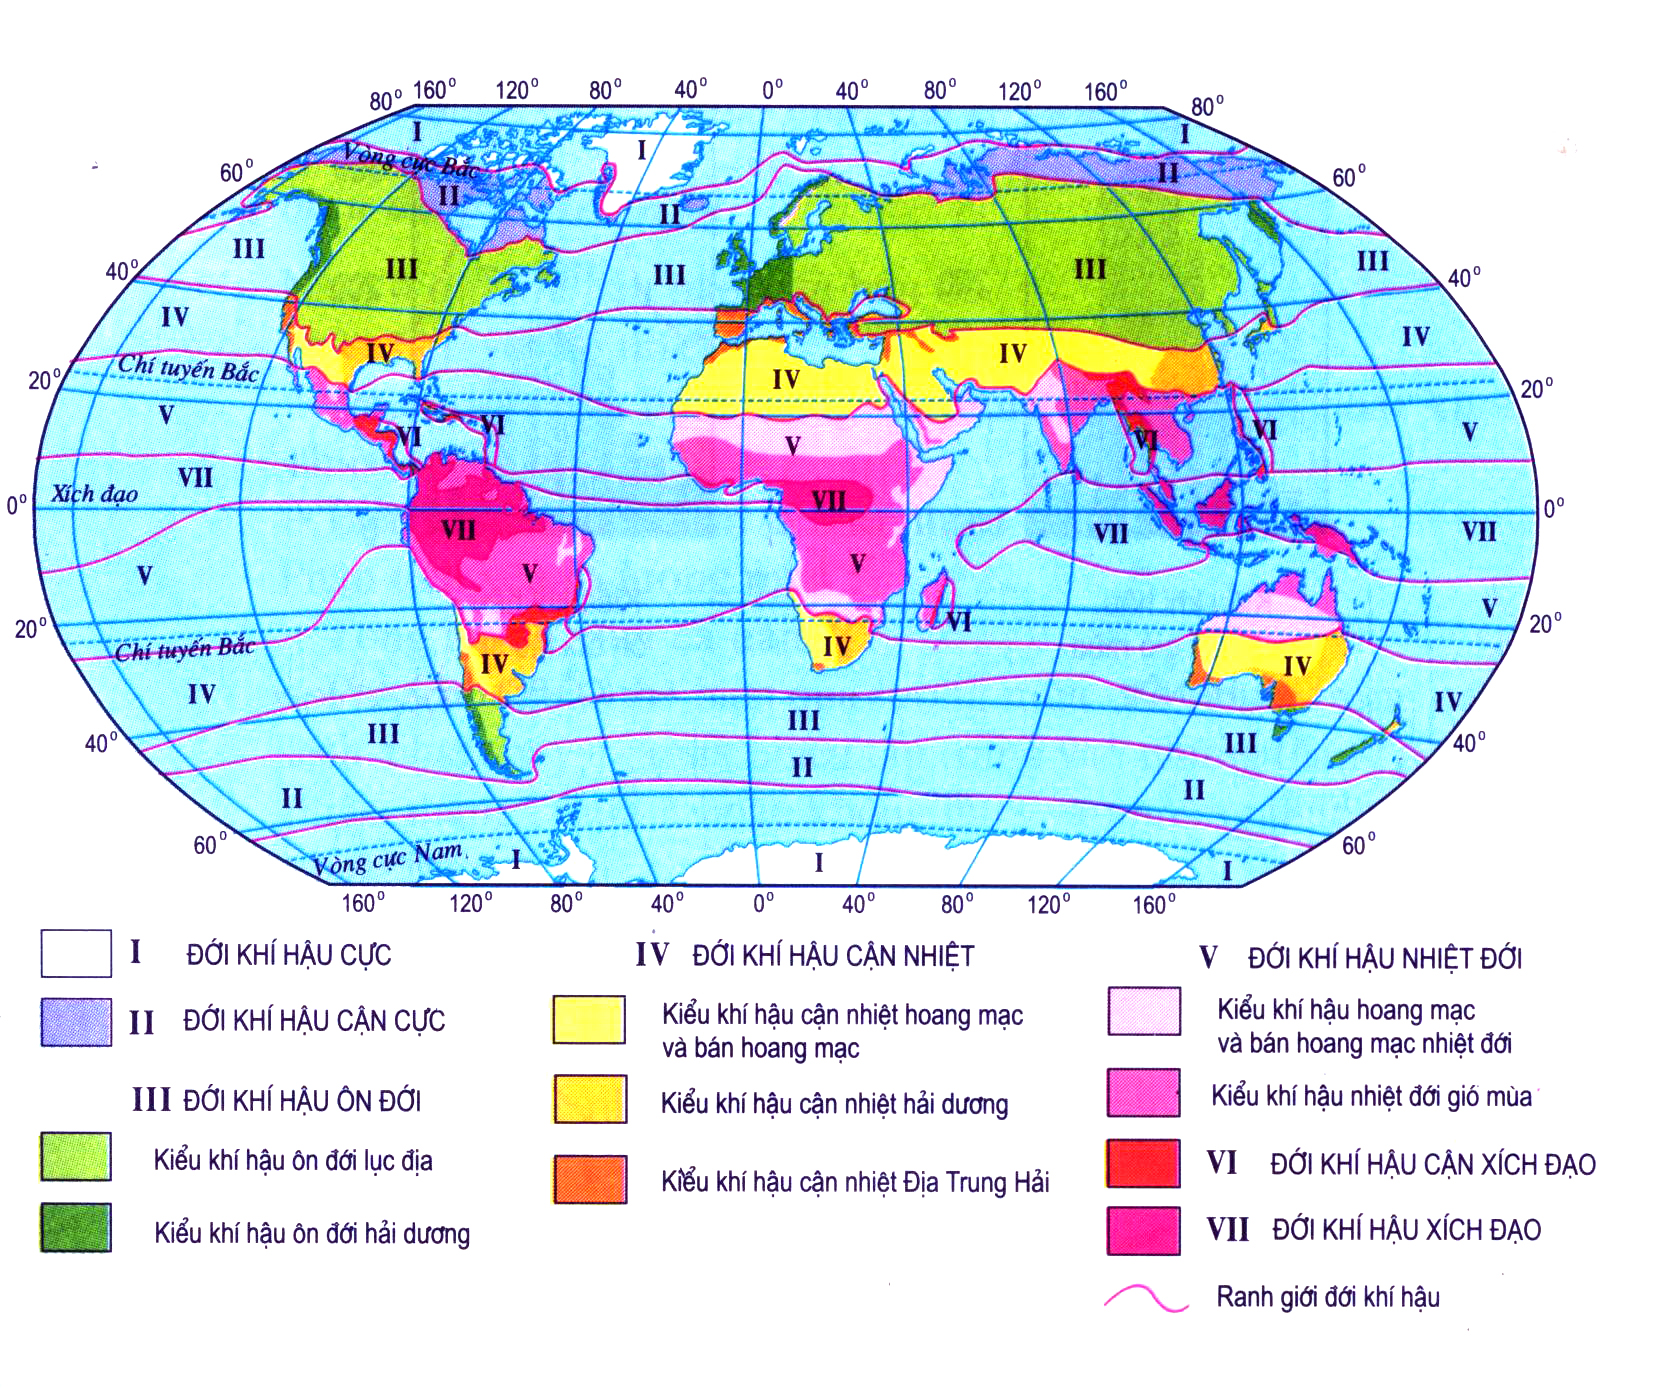 Đọc bản đồ sự phân hóa các đới và các kiểu khí hậu trên Trái Đất. Phân tích biểu đồ một số kiểu khí hậu